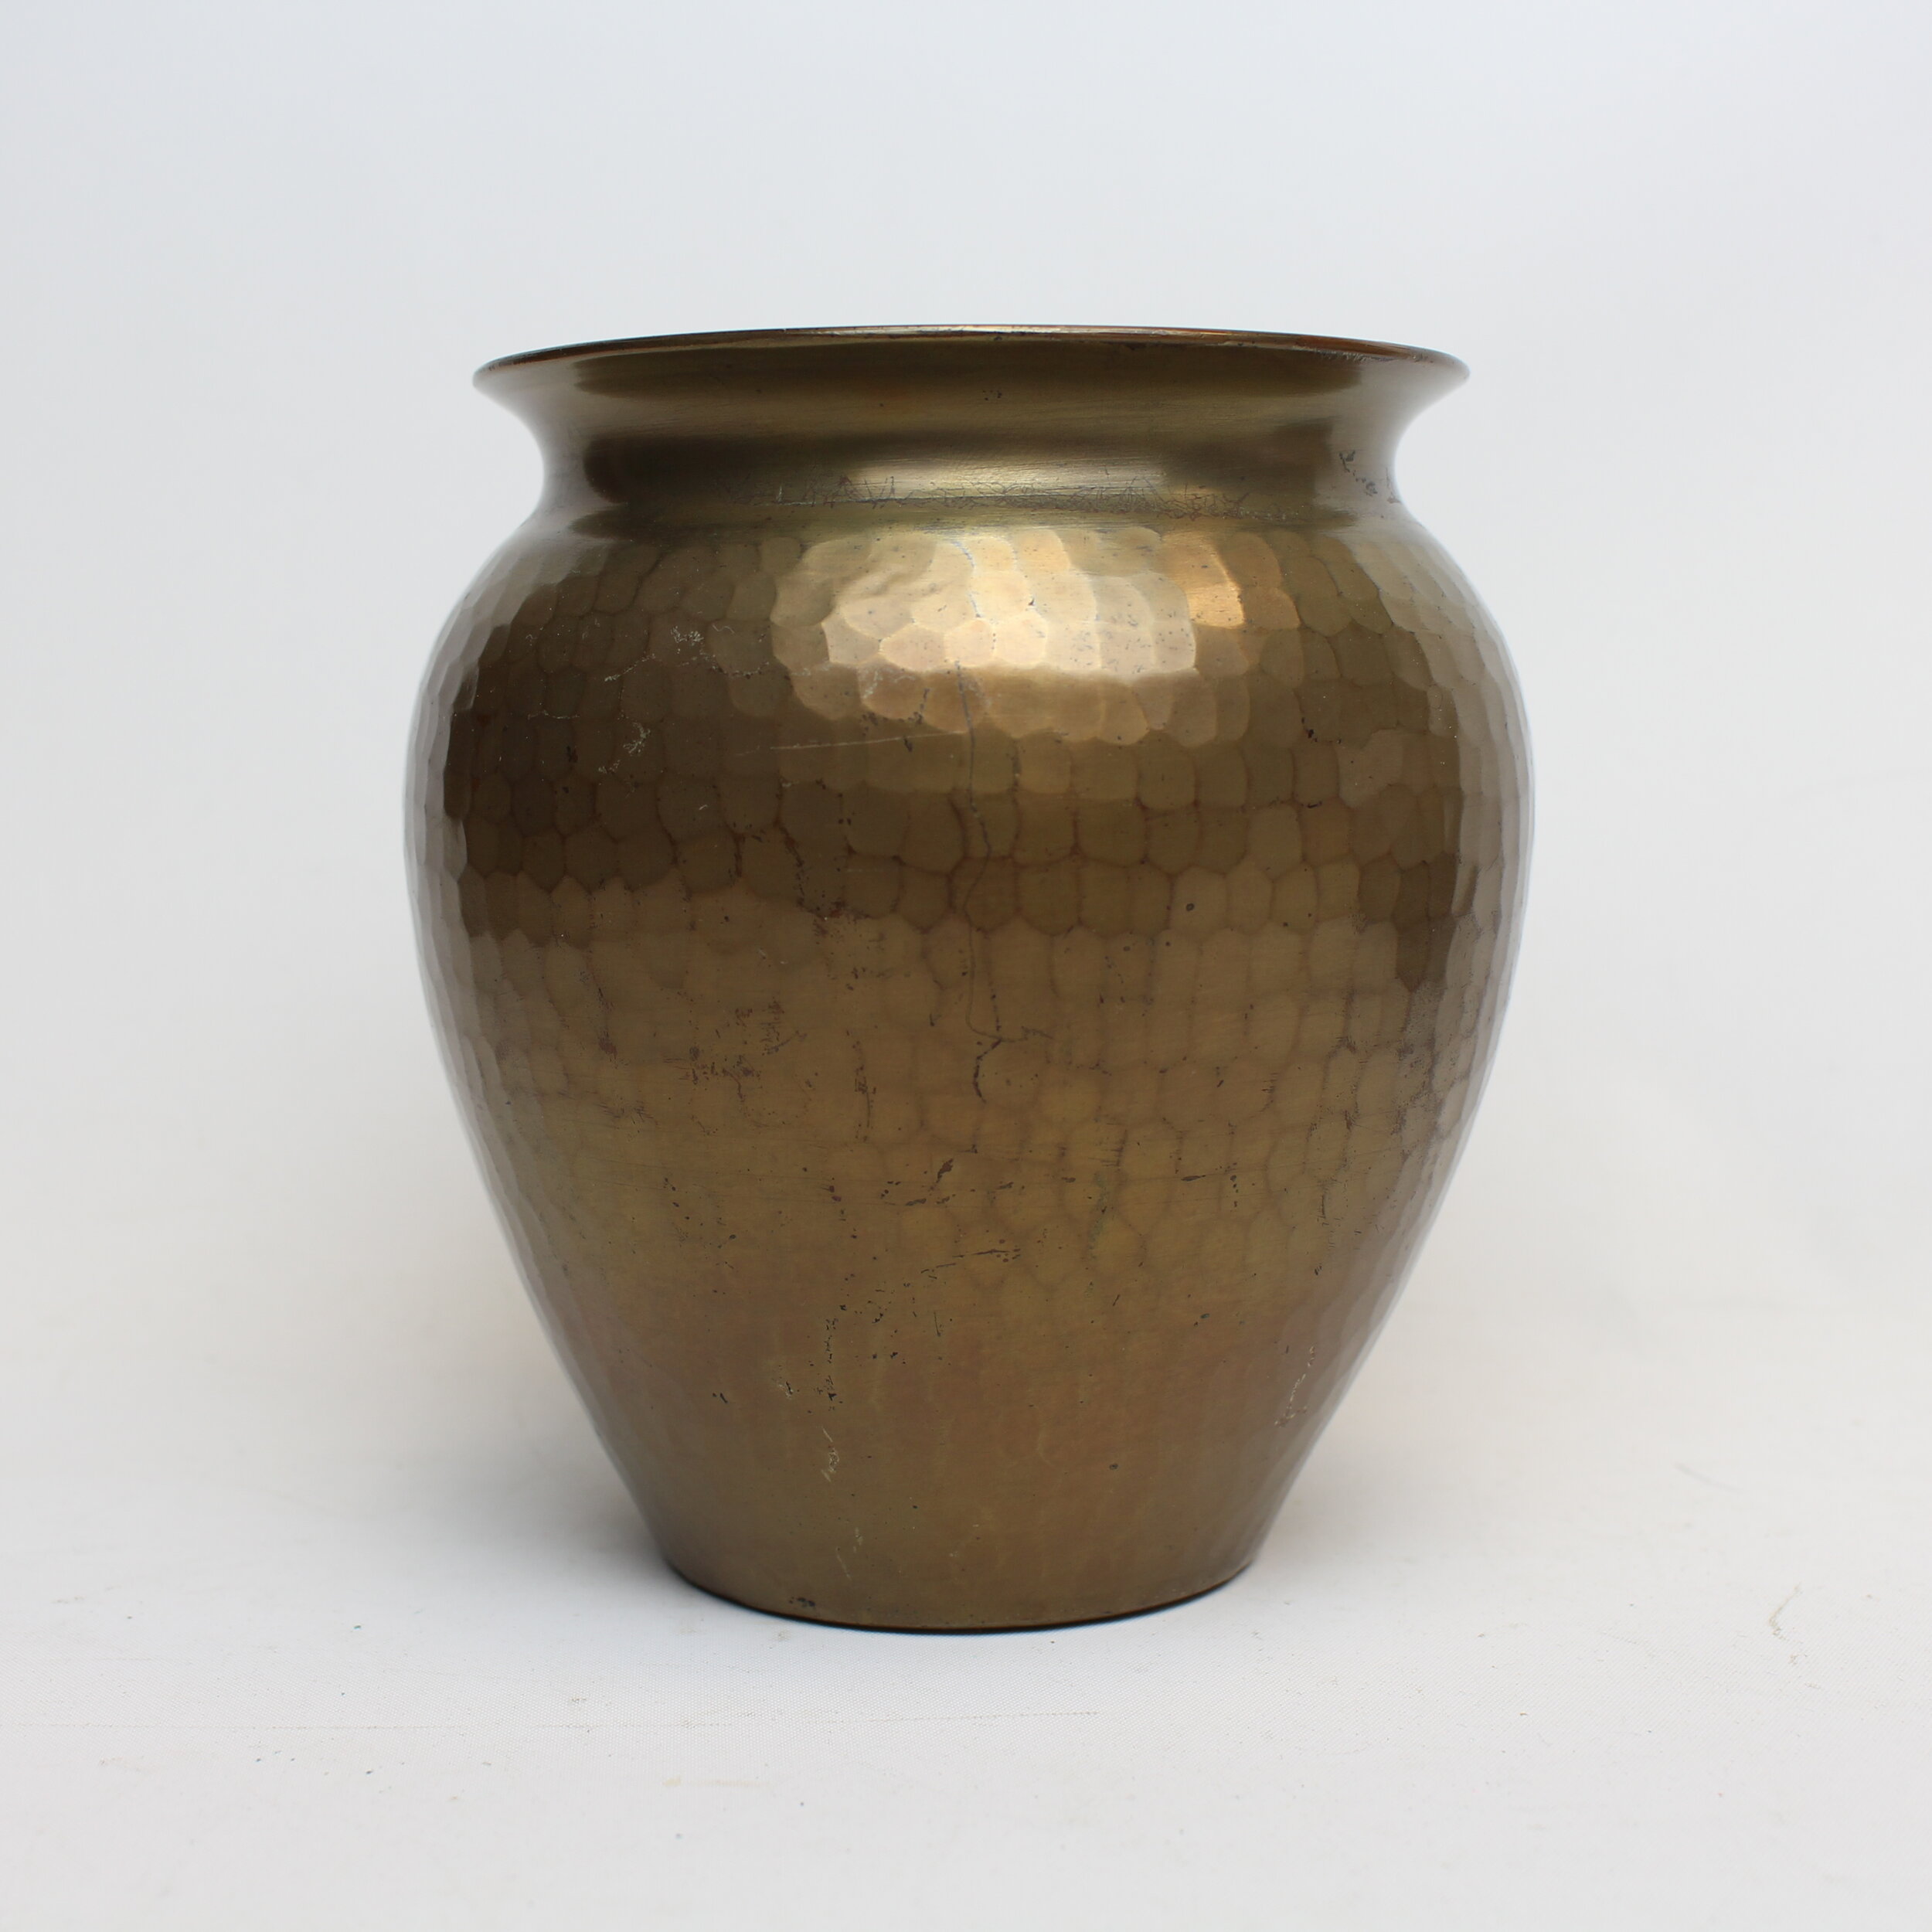 Roycroft Bulbous Caramel Toned Vase